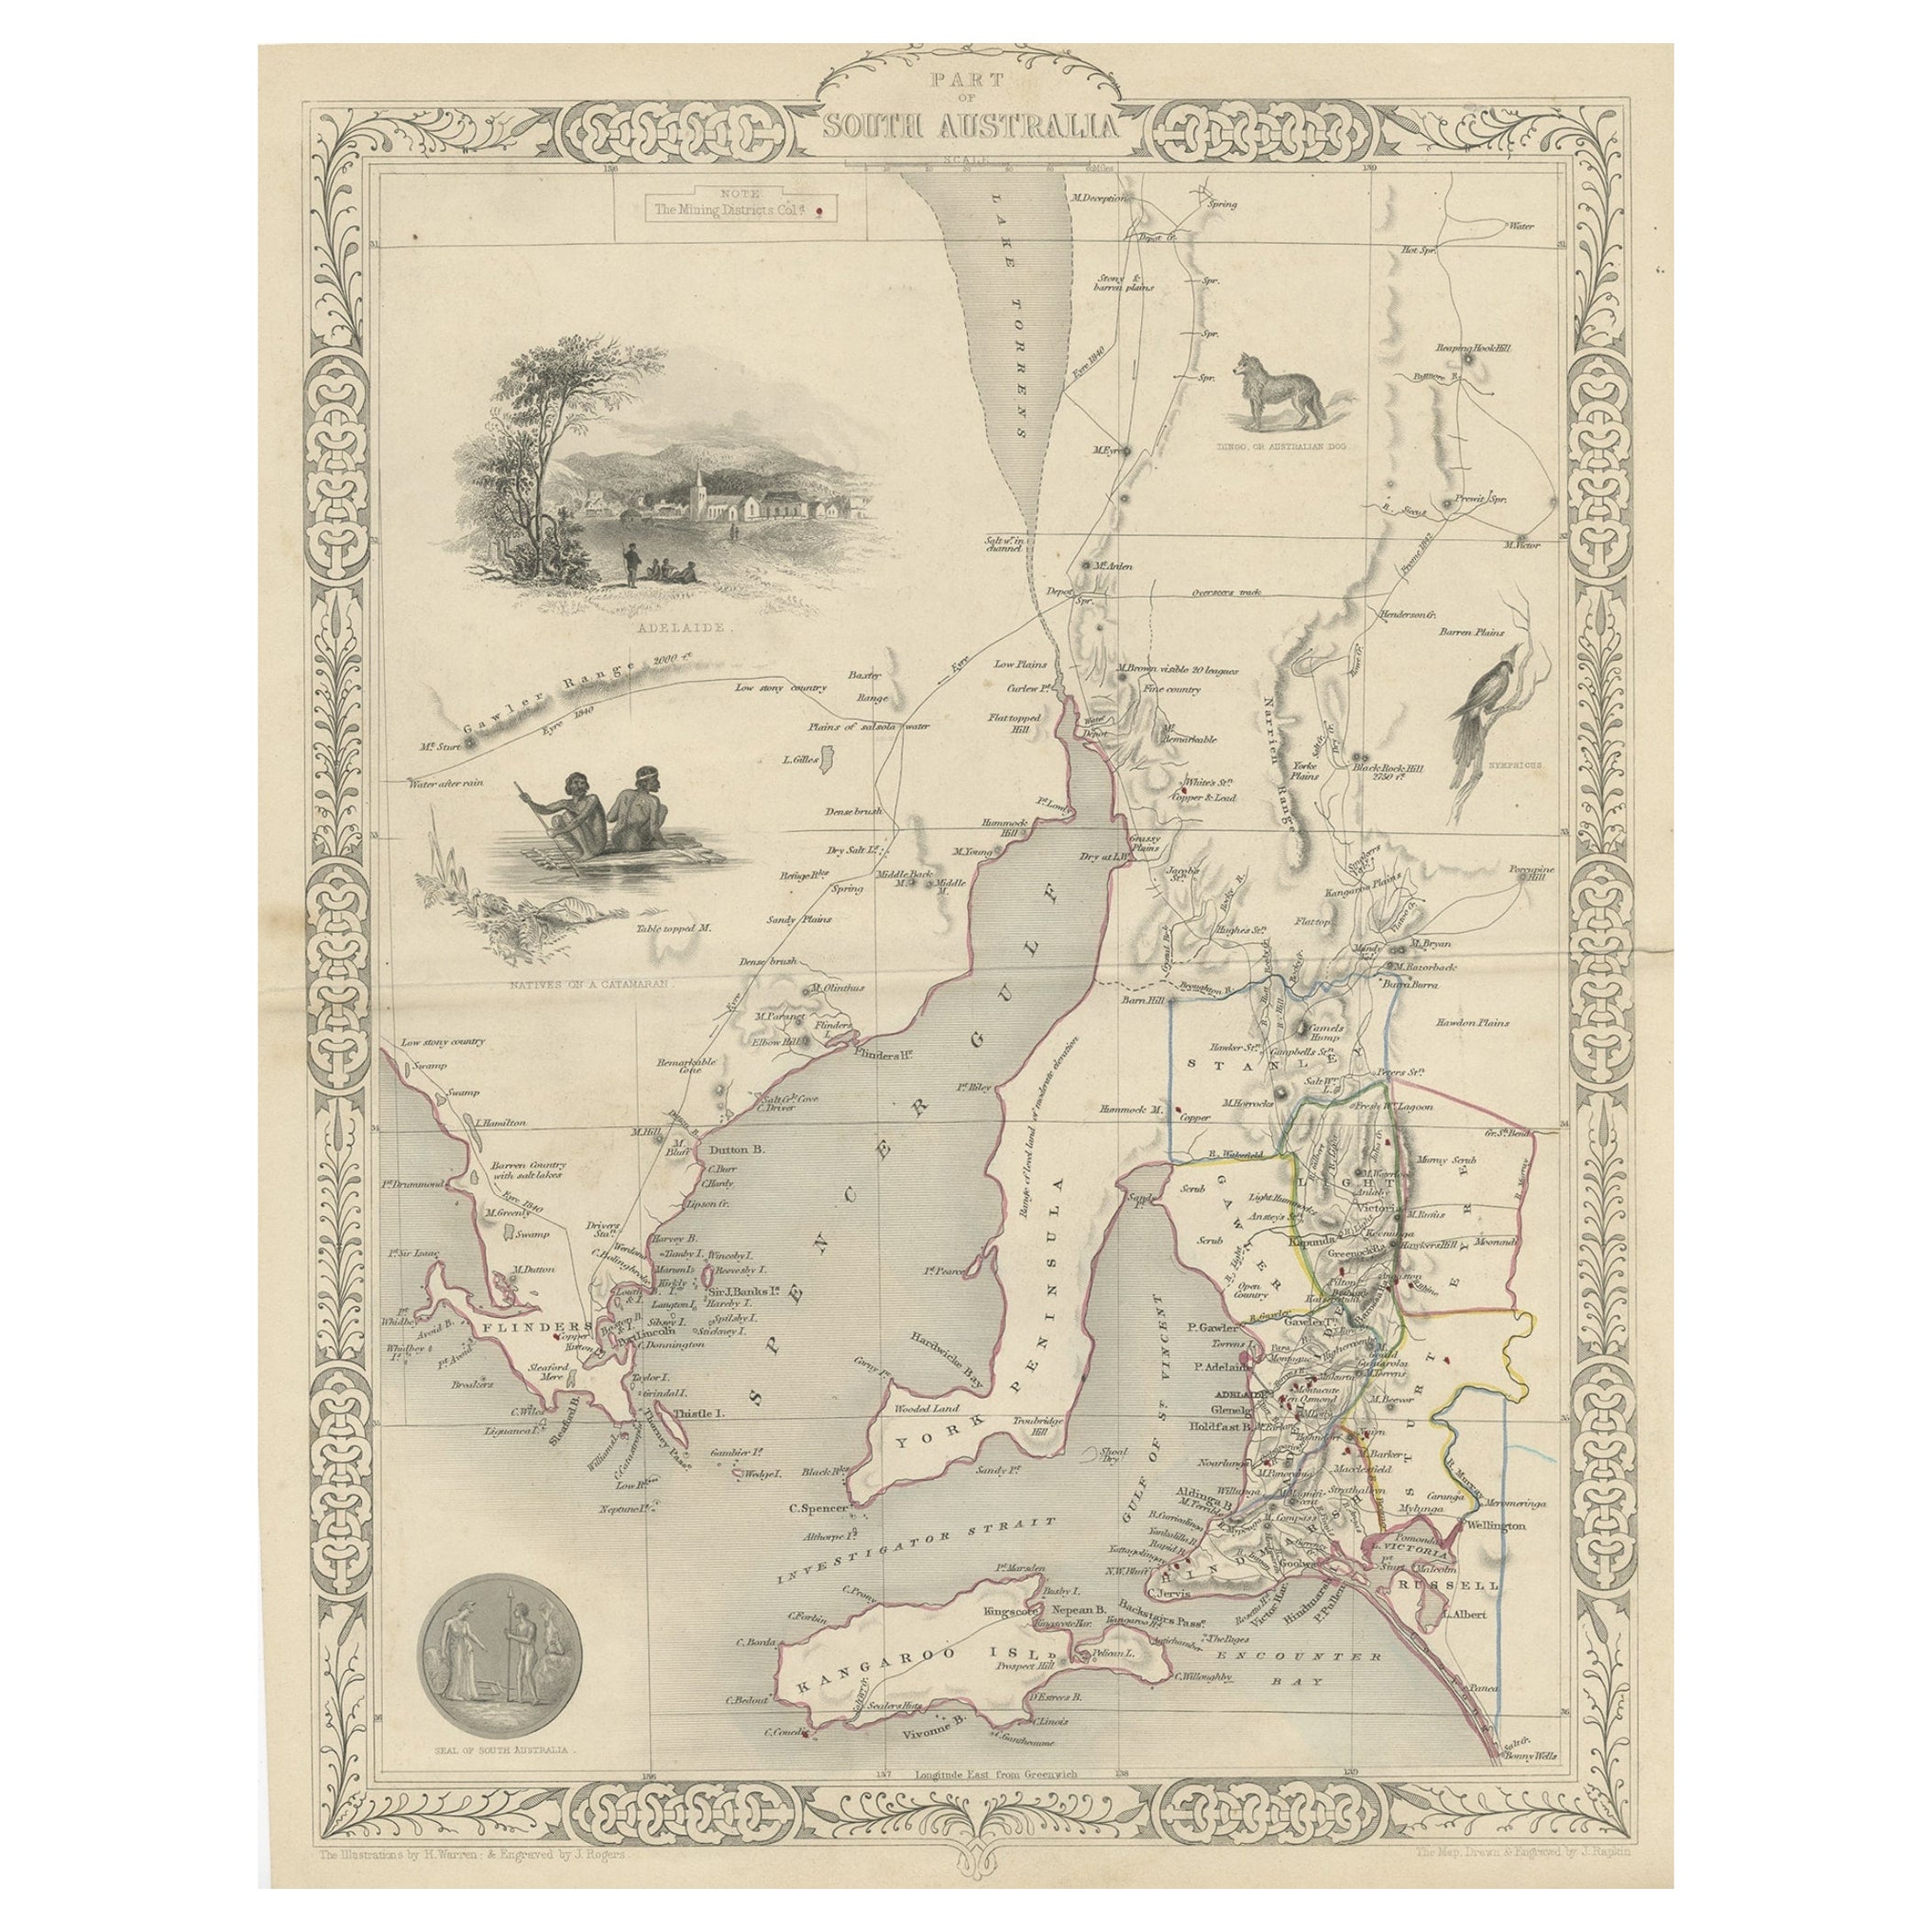 Dekorative Karte eines Teils SüdAustraliens mit Illustrationen von Adelaide, 1851